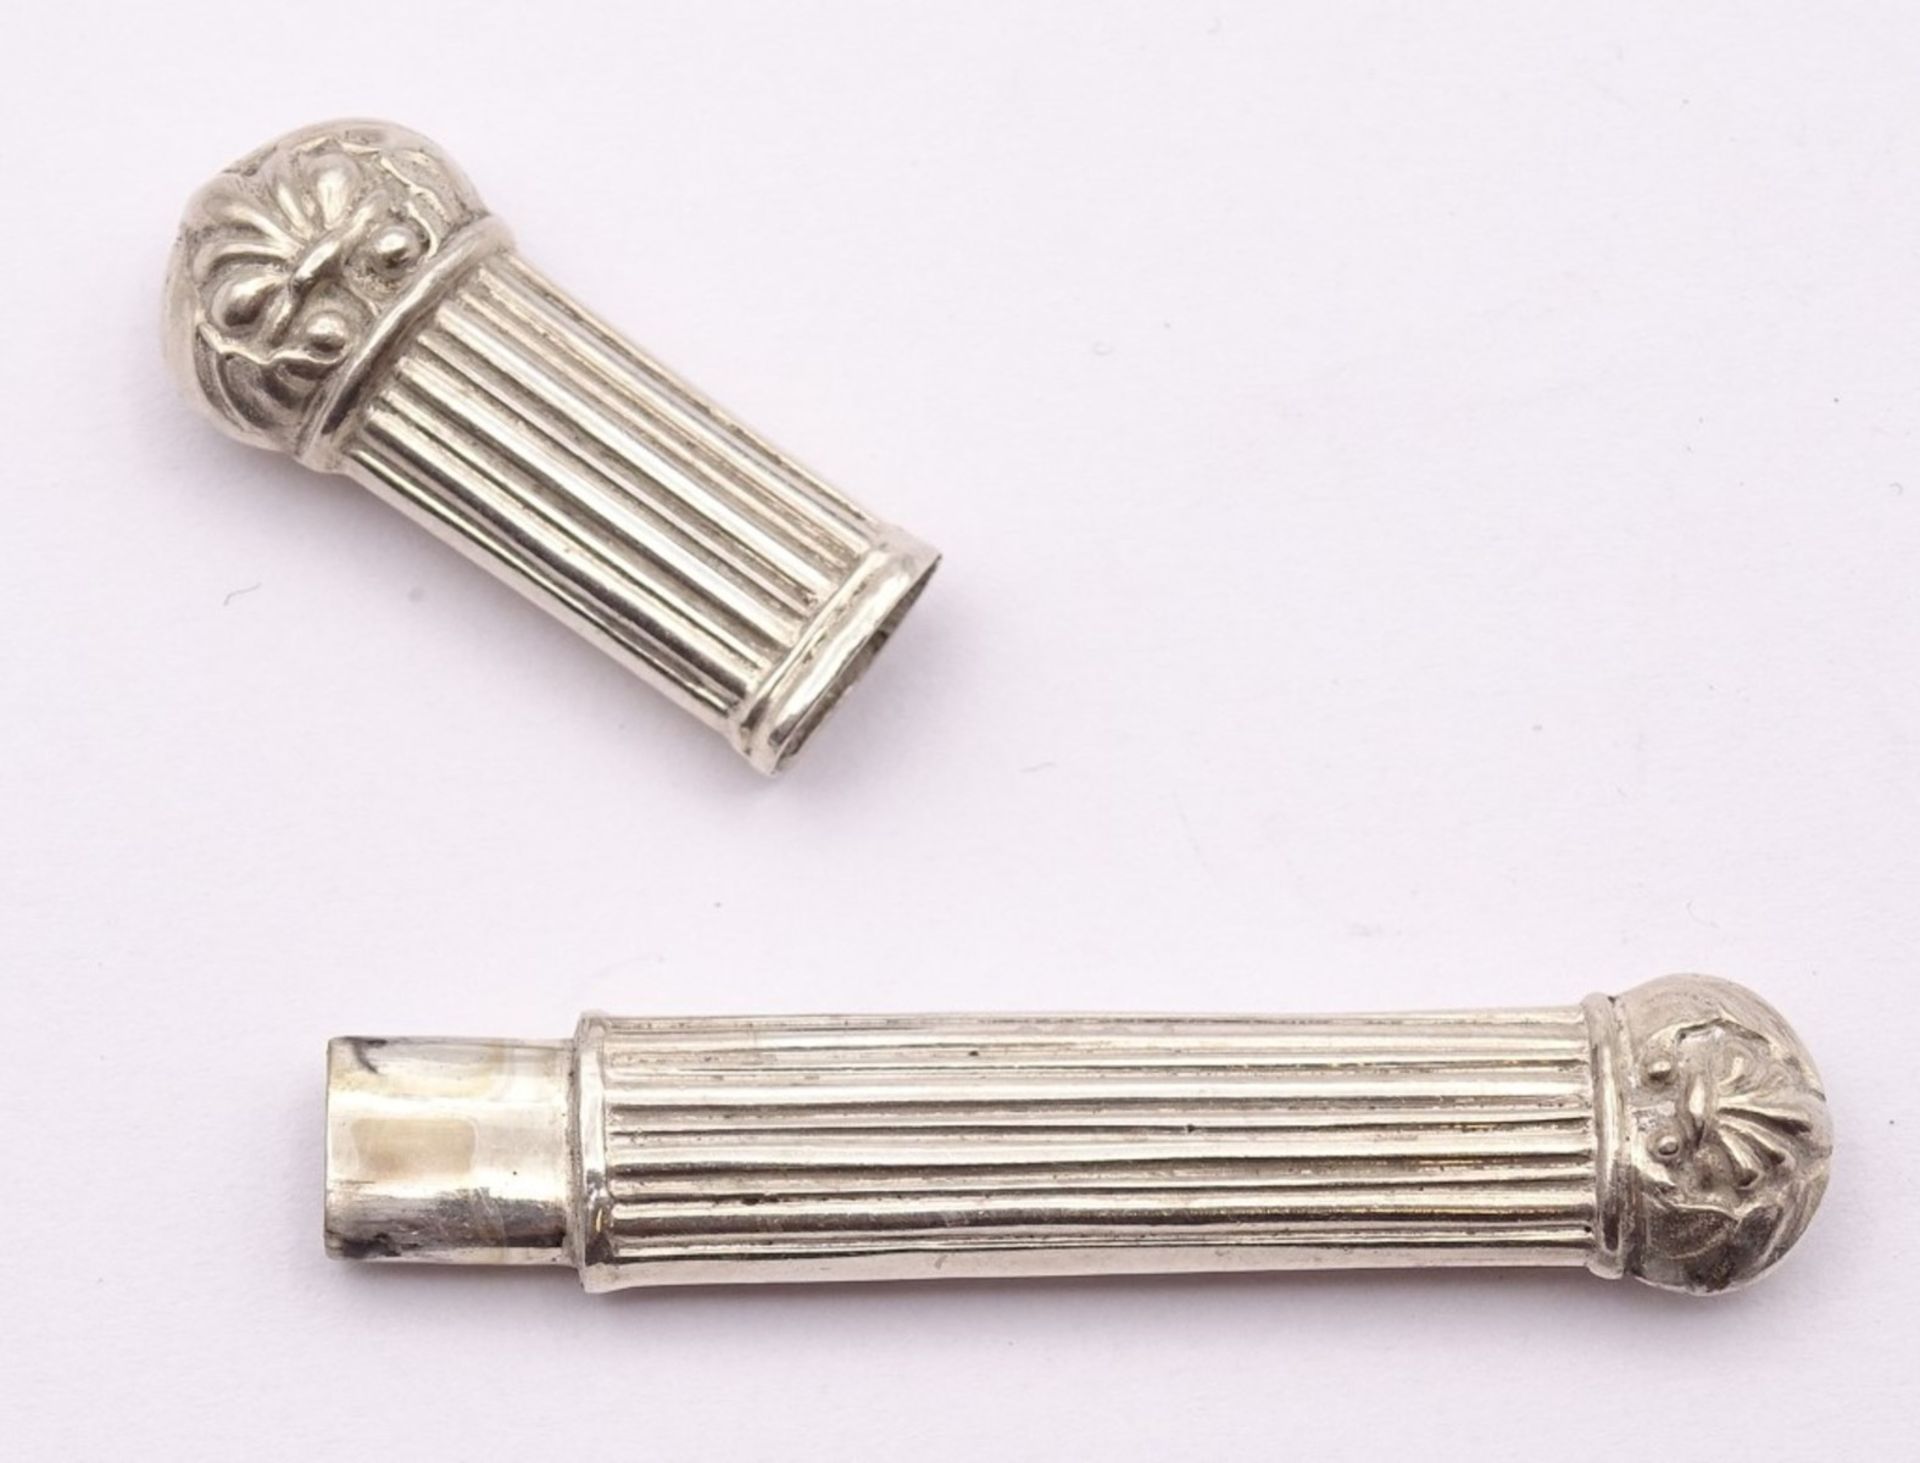 Nähnadel oder Zahnstocher Behälter,Silber, 7,2cm, 5,7 g. - Bild 3 aus 3